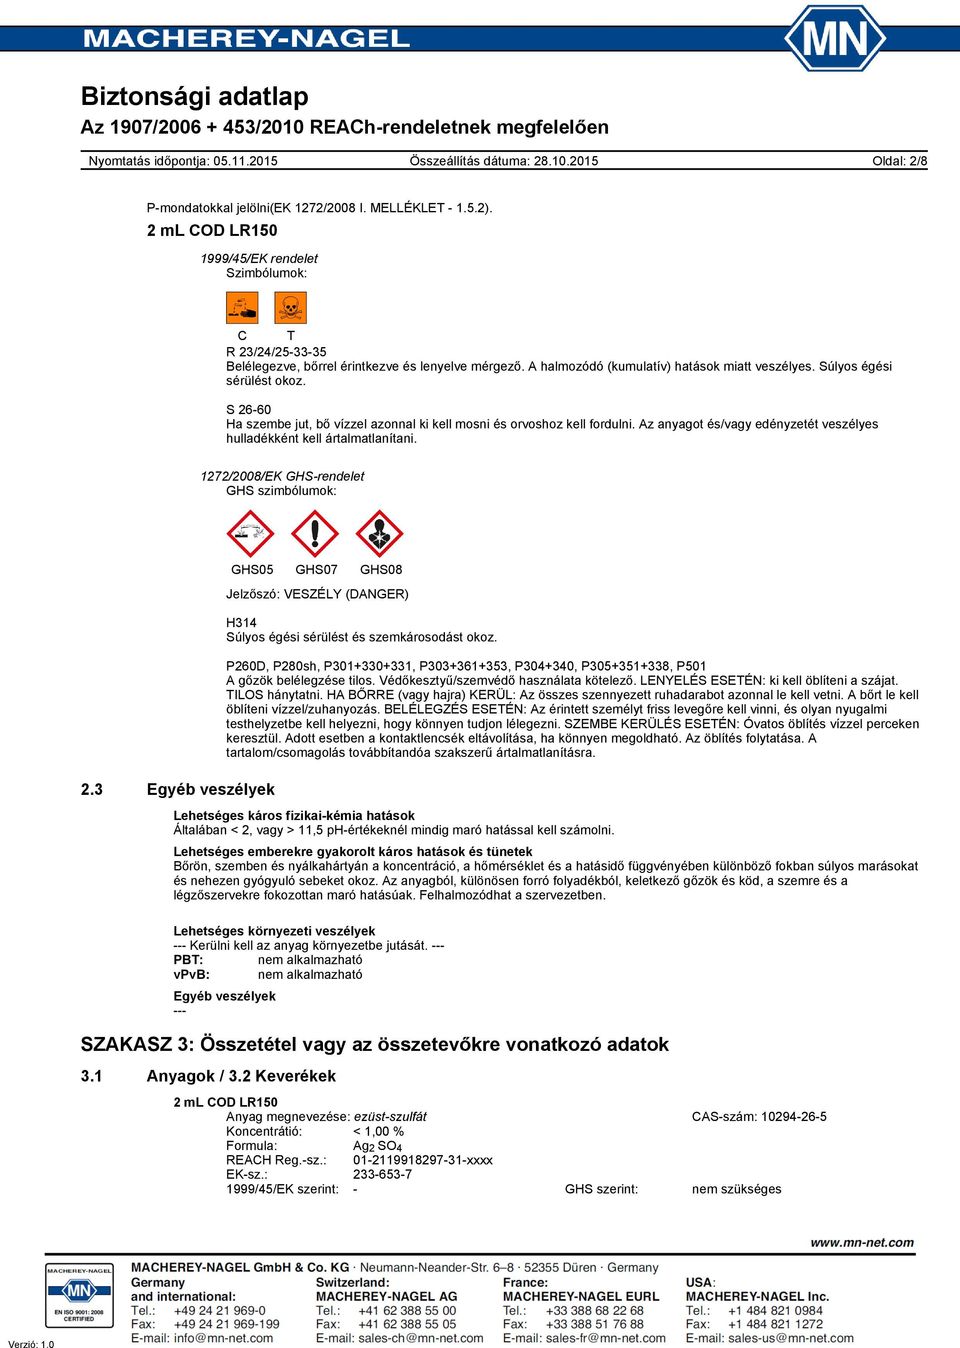 Az anyagot és/vagy edényzetét veszélyes hulladékként kell ártalmatlanítani. 1272/2008/EK GHS-rendelet GHS szimbólumok: 2.